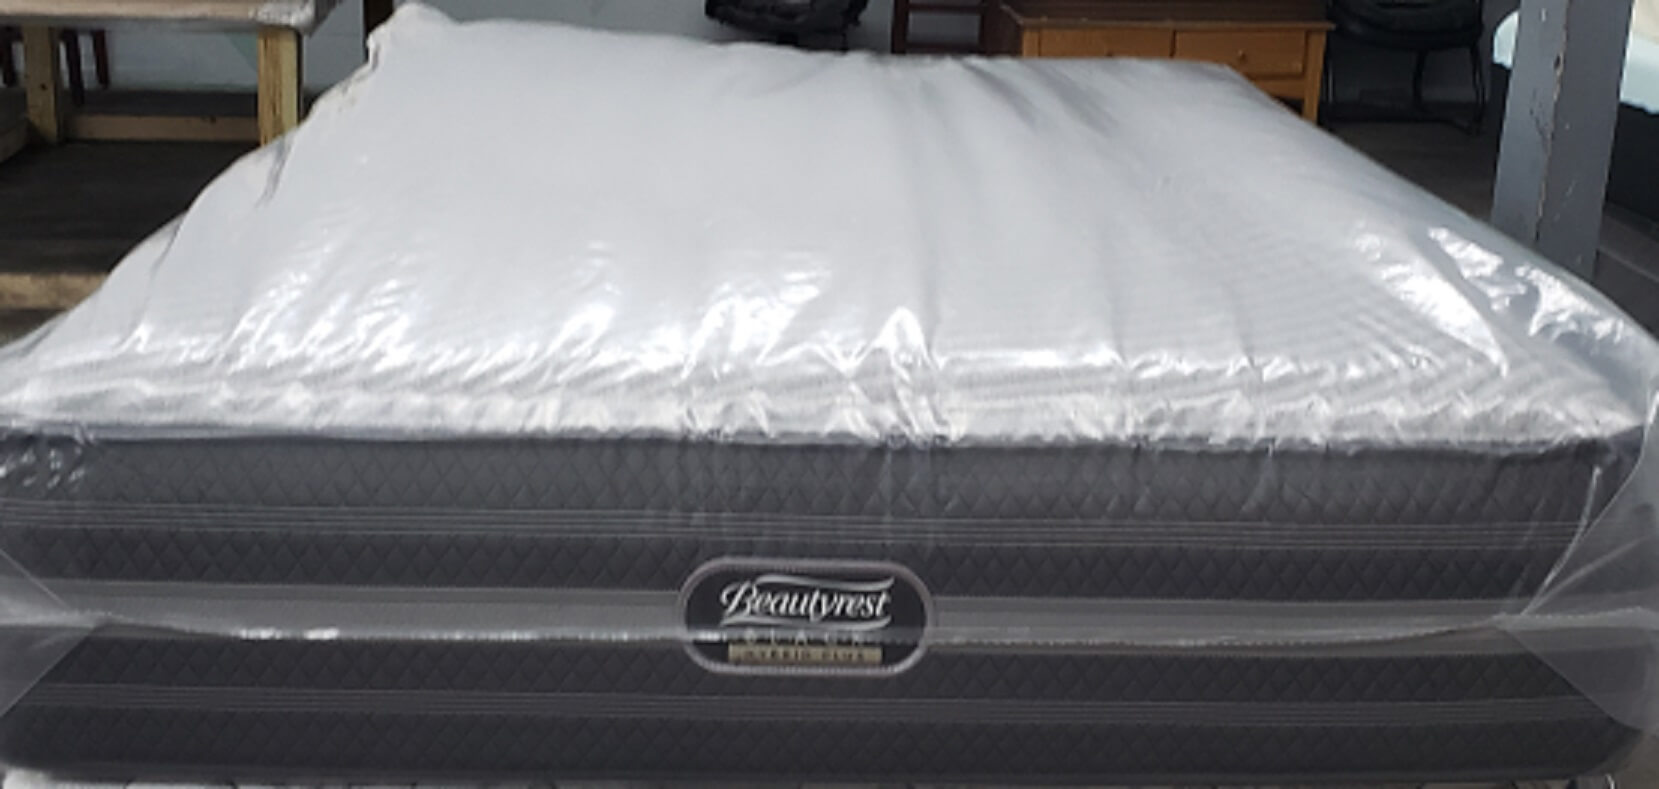 beautyrest jennings king mattress